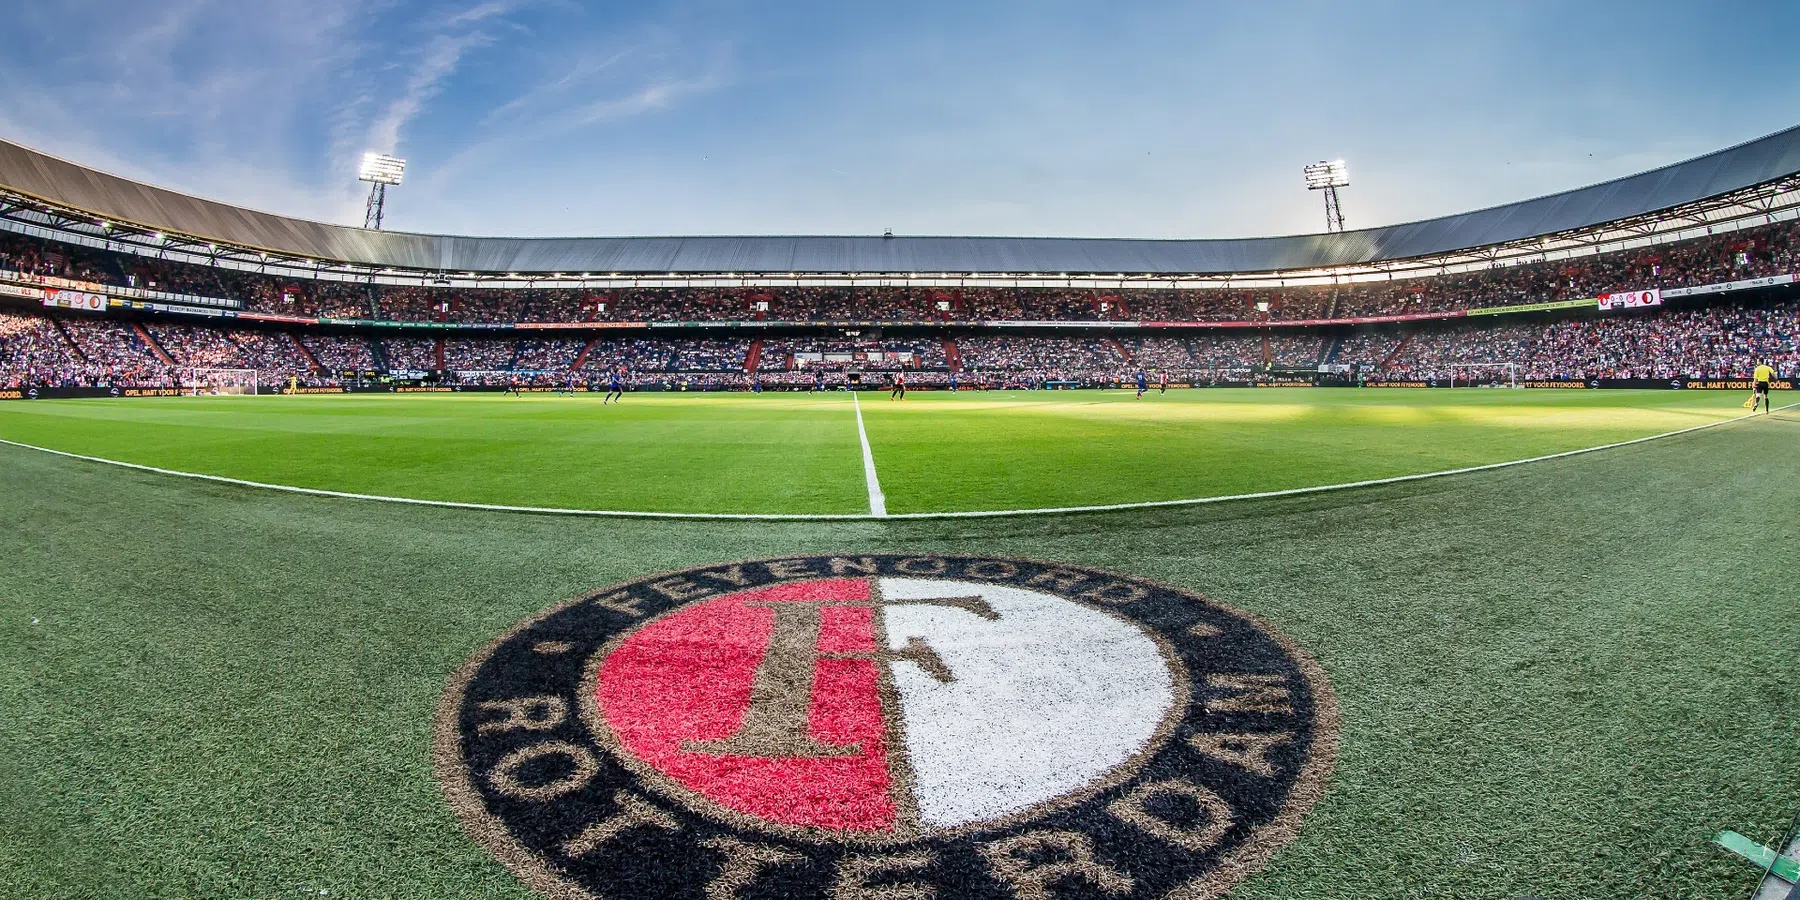 VI: Priske neemt 27-jarige assistent-trainer mee naar Feyenoord